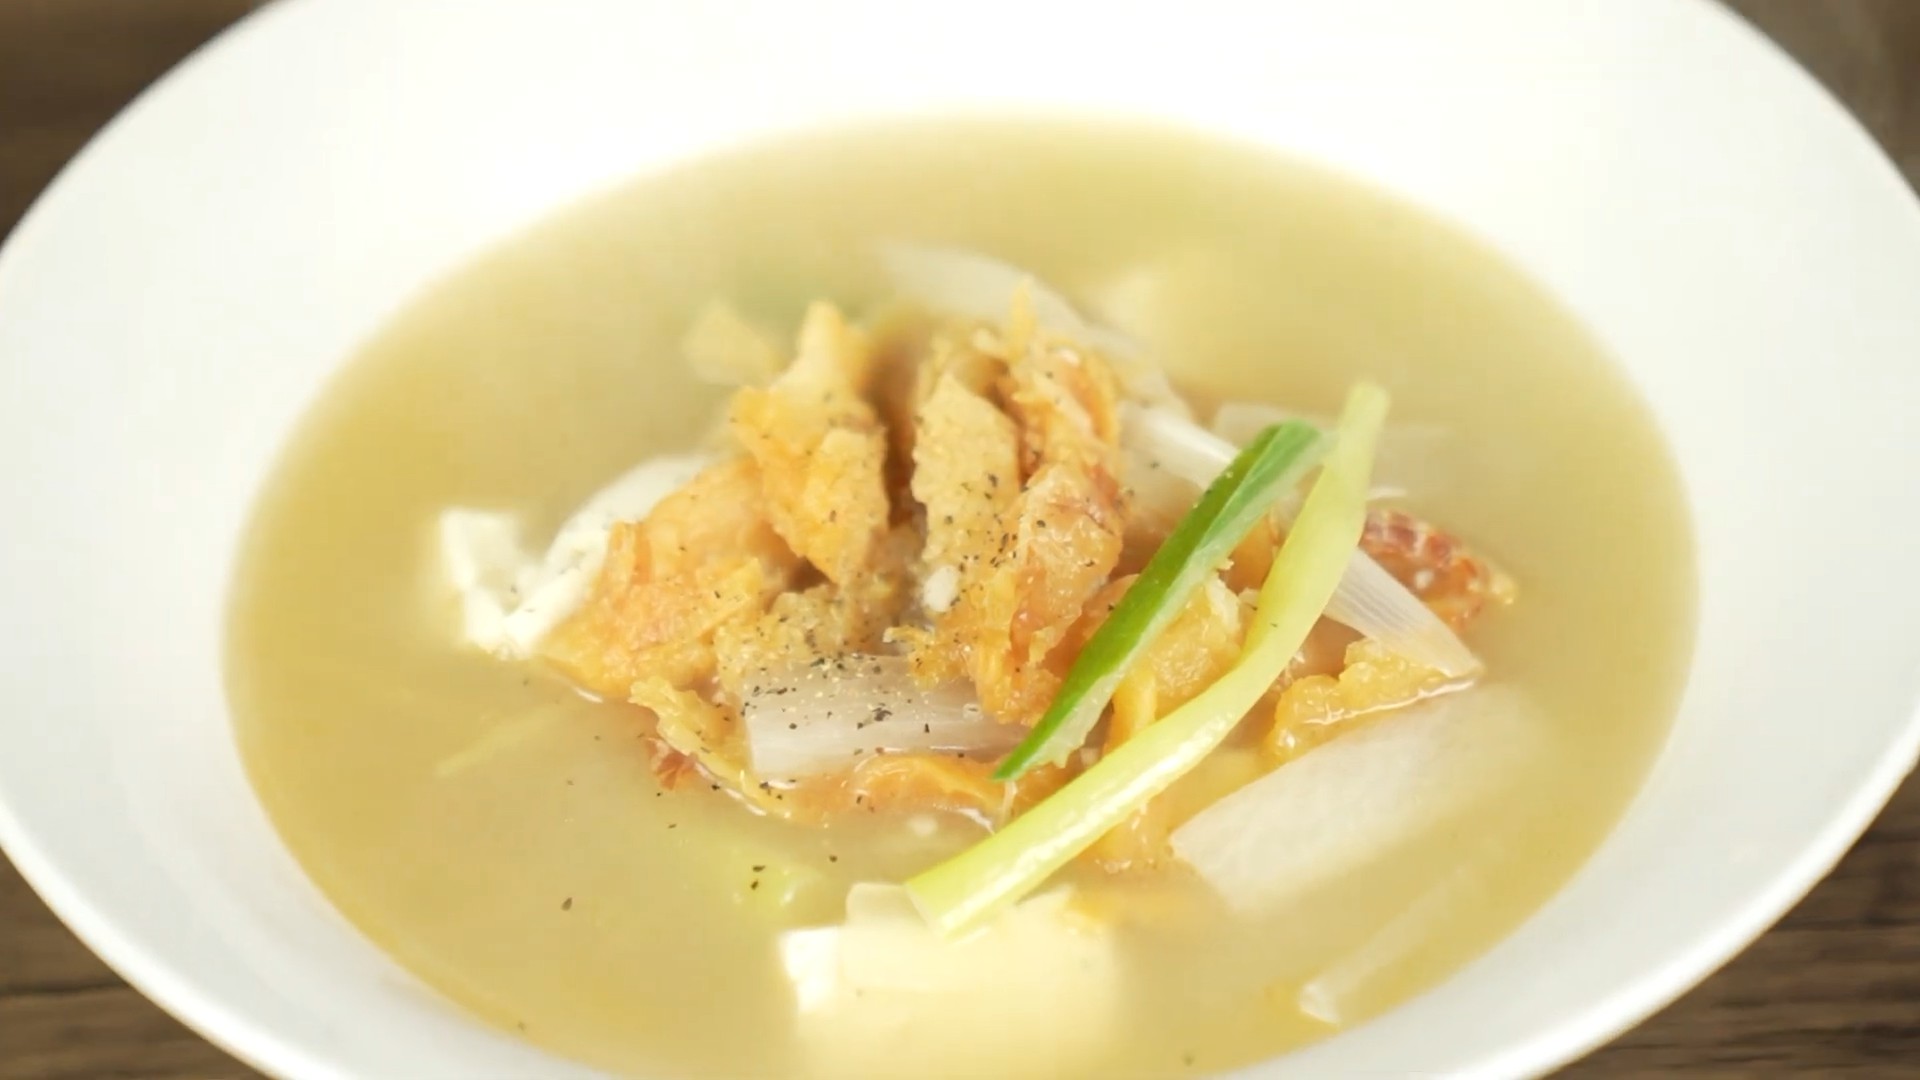 干し鱈スープ プゴク 美白効果 二日酔いに効く毎日食べたい激ウマスープレシピ Konkontv Yahoo Japan クリエイターズプログラム